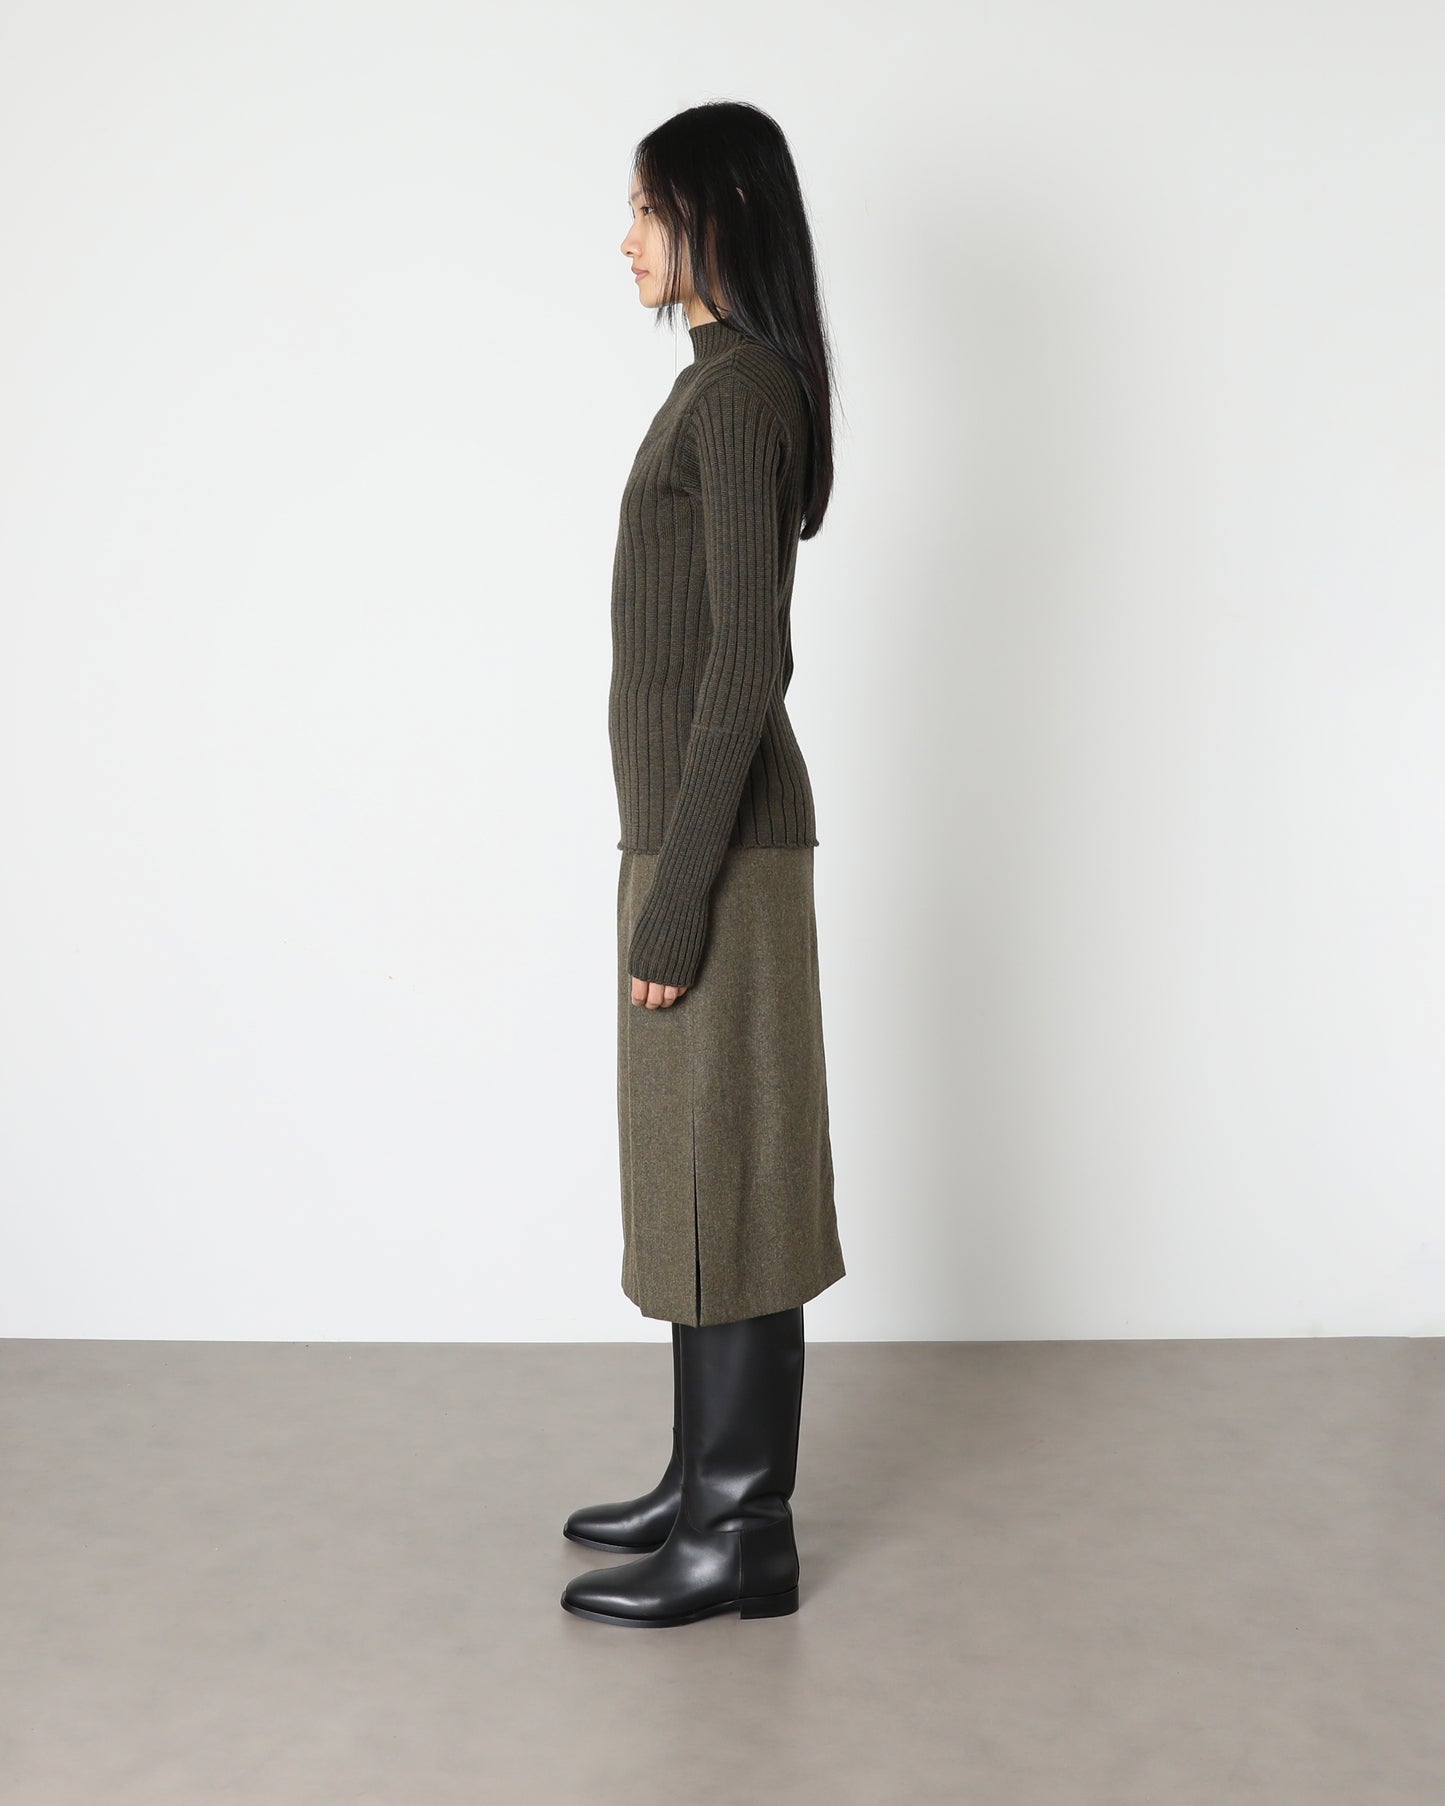 Model wears Issue Twelve Nina Jumper in Wool Green